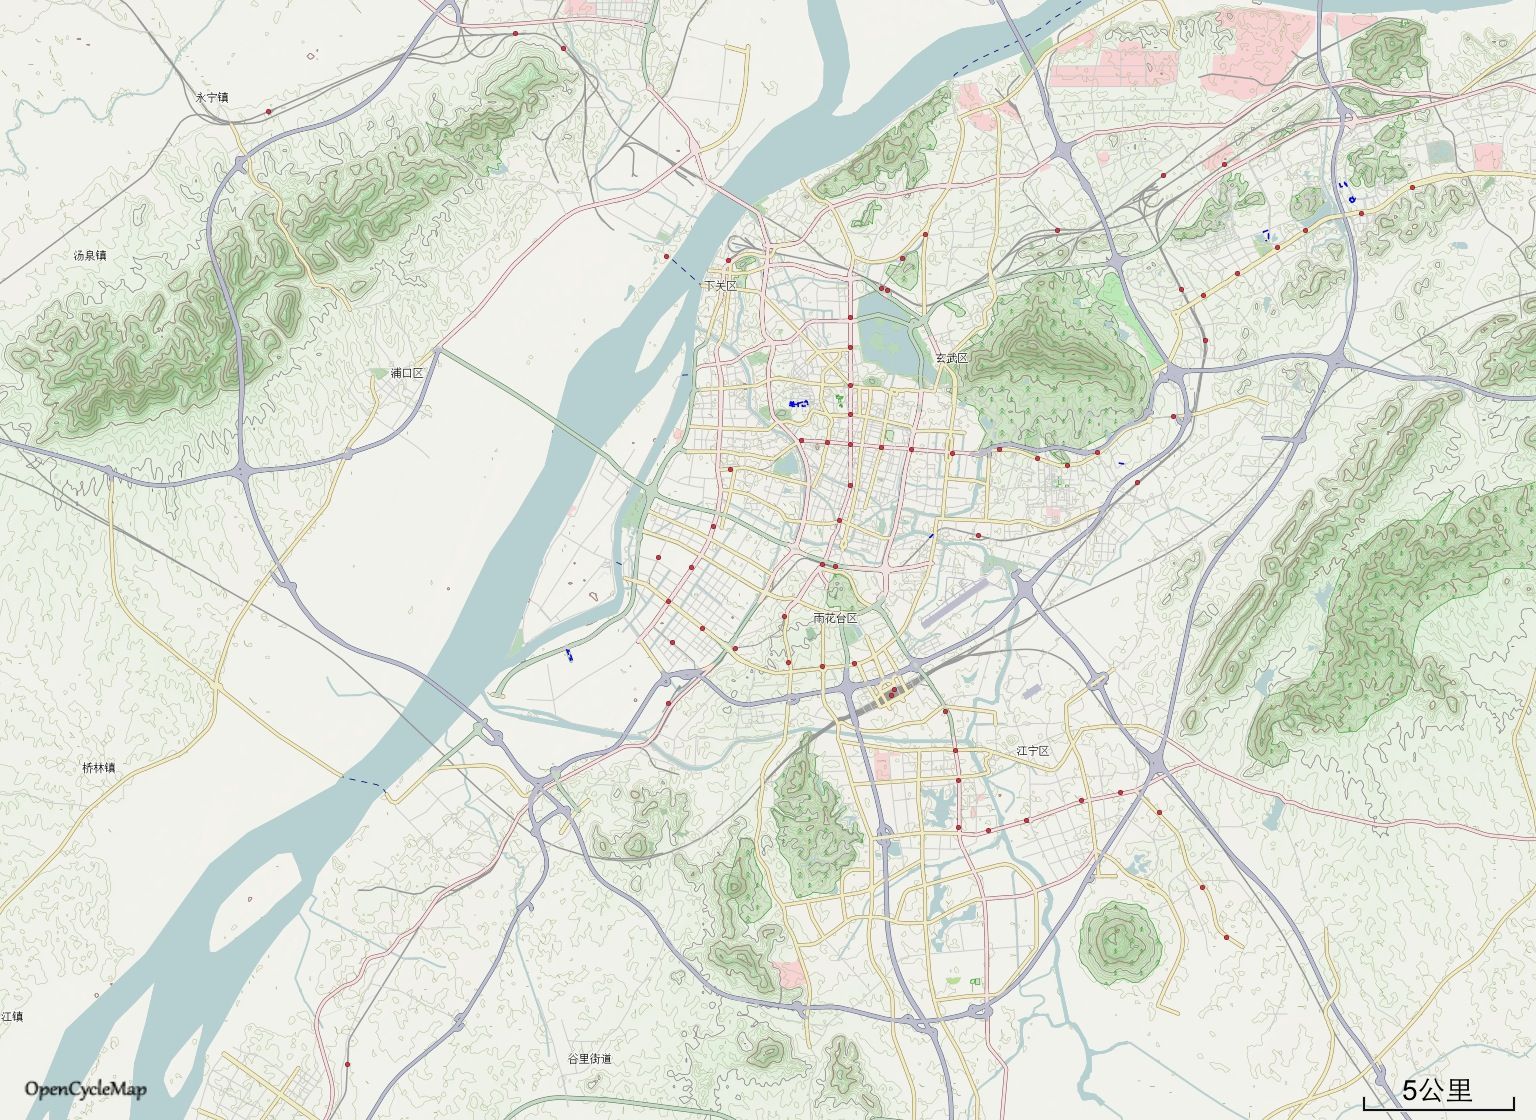 中国地图 江苏 南京市 >> 南京市城市地形图集  栏目导航: 南京市图片